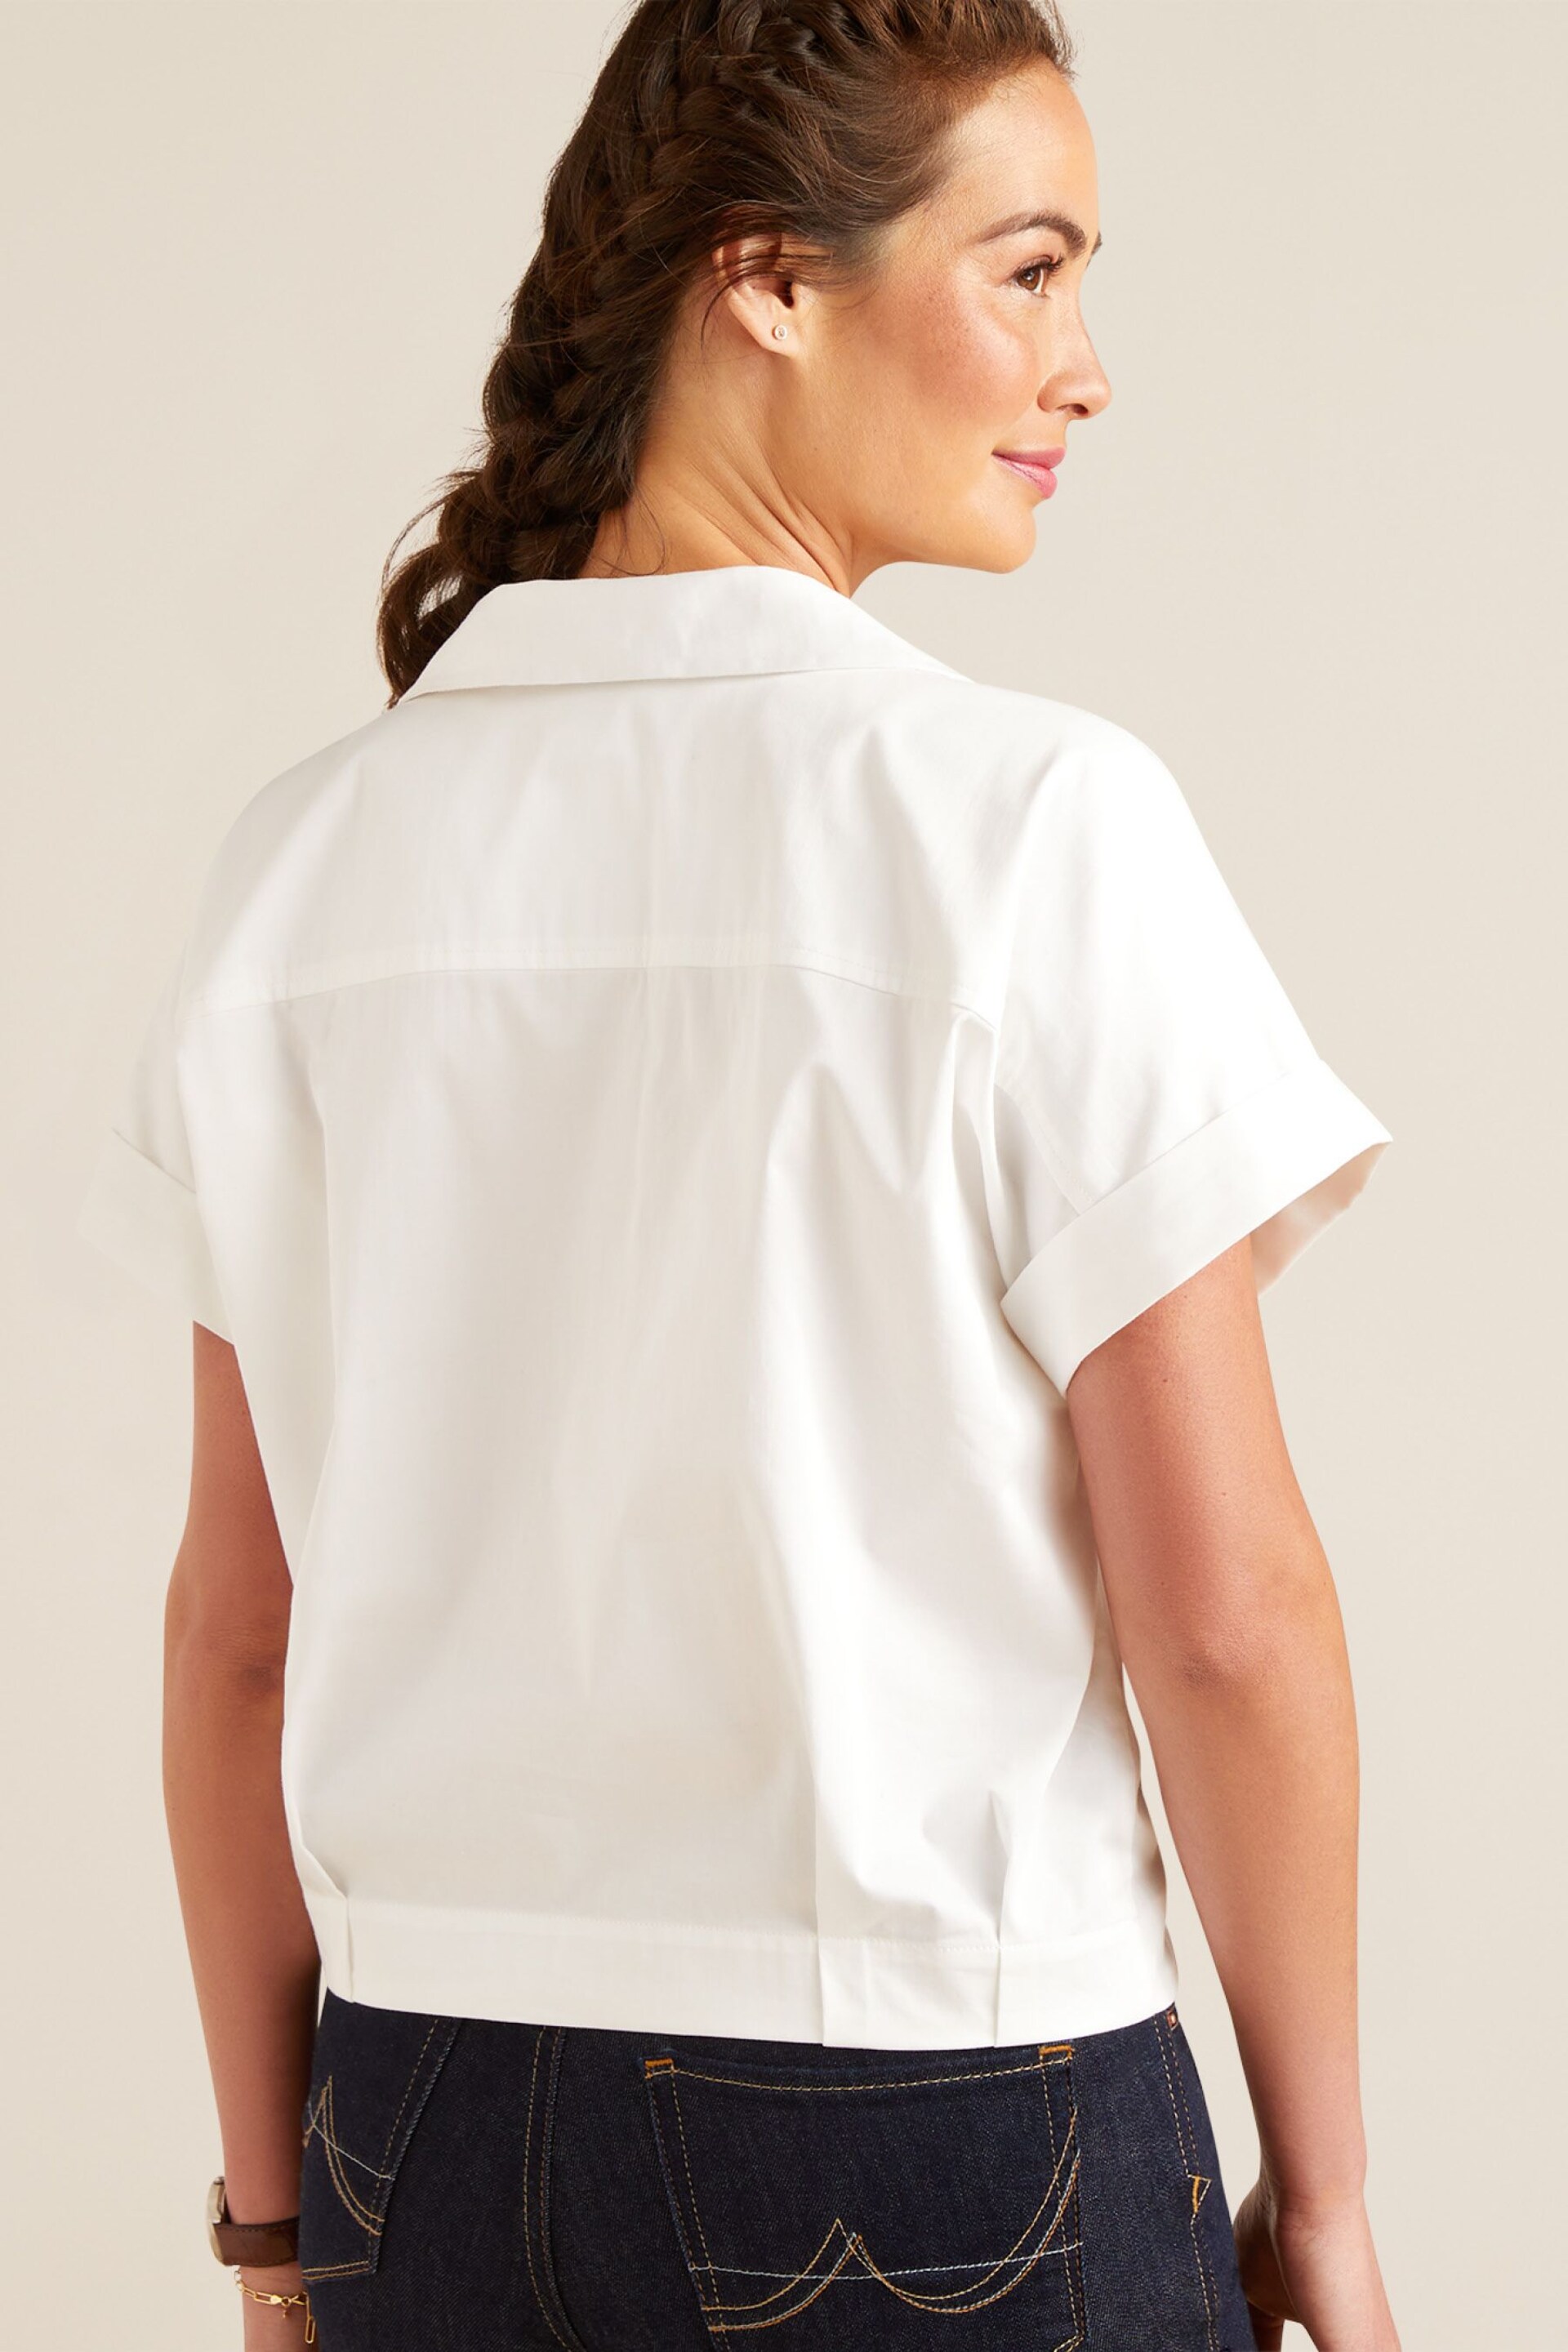 Ariat Brookside White Short Sleeve Shirt - Image 3 of 4